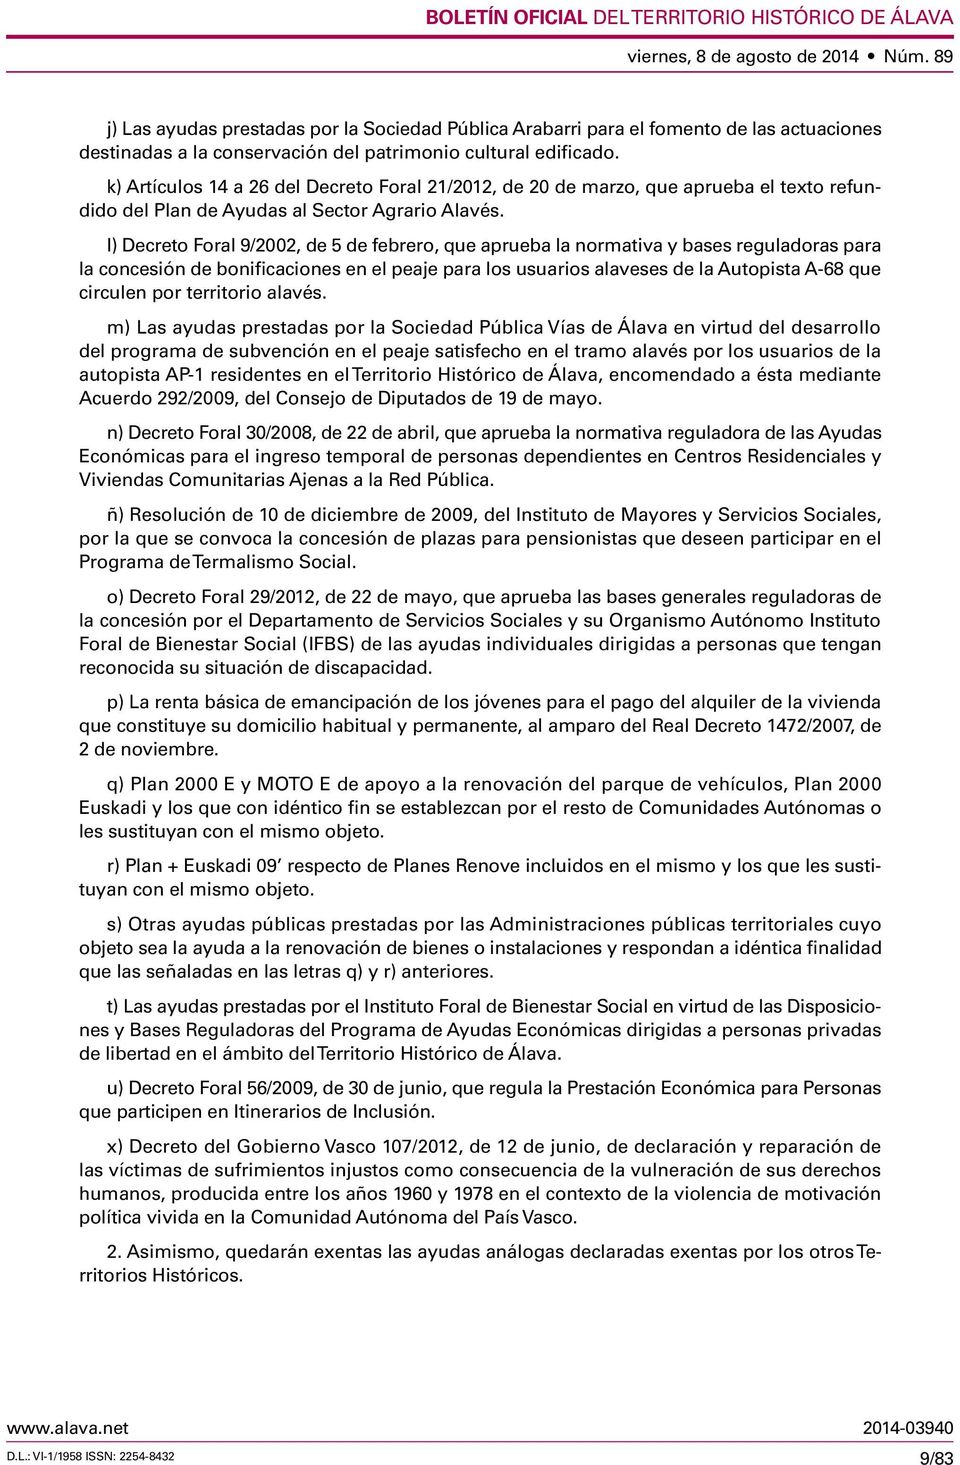 l) Decreto Foral 9/2002, de 5 de febrero, que aprueba la normativa y bases reguladoras para la concesión de bonificaciones en el peaje para los usuarios alaveses de la Autopista A-68 que circulen por